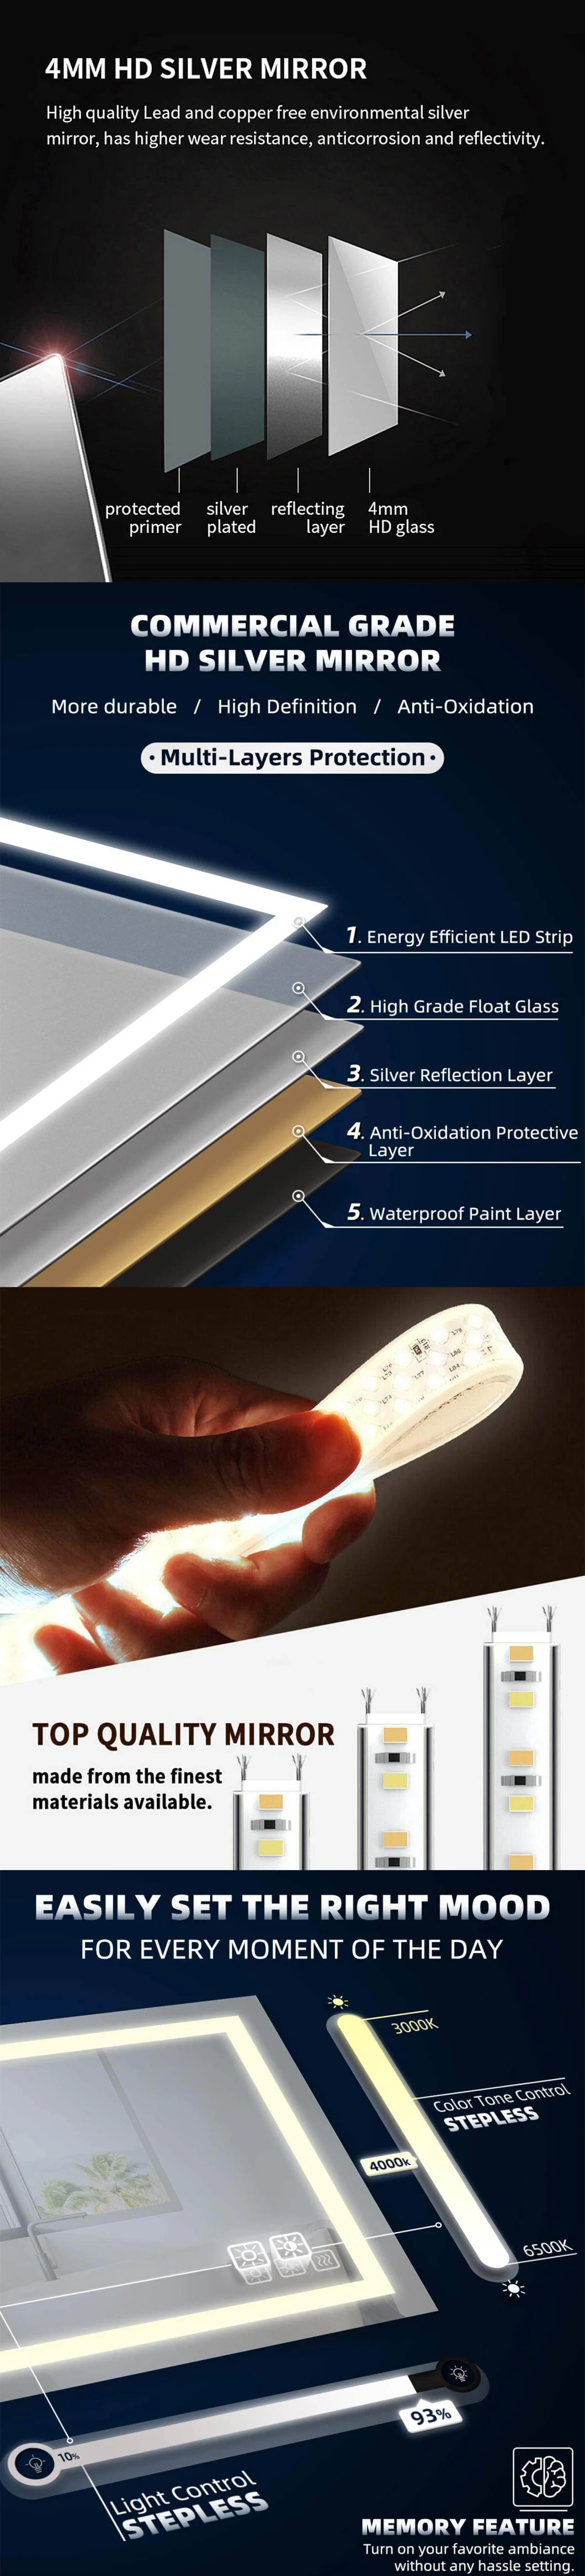 Sally Badezimmer LED Spiegel Wandbehang Touch Sensor Schalter Dimmbares Licht Home Dekorativer Rahmenloser Spiegel Vertikal oder Horizontal